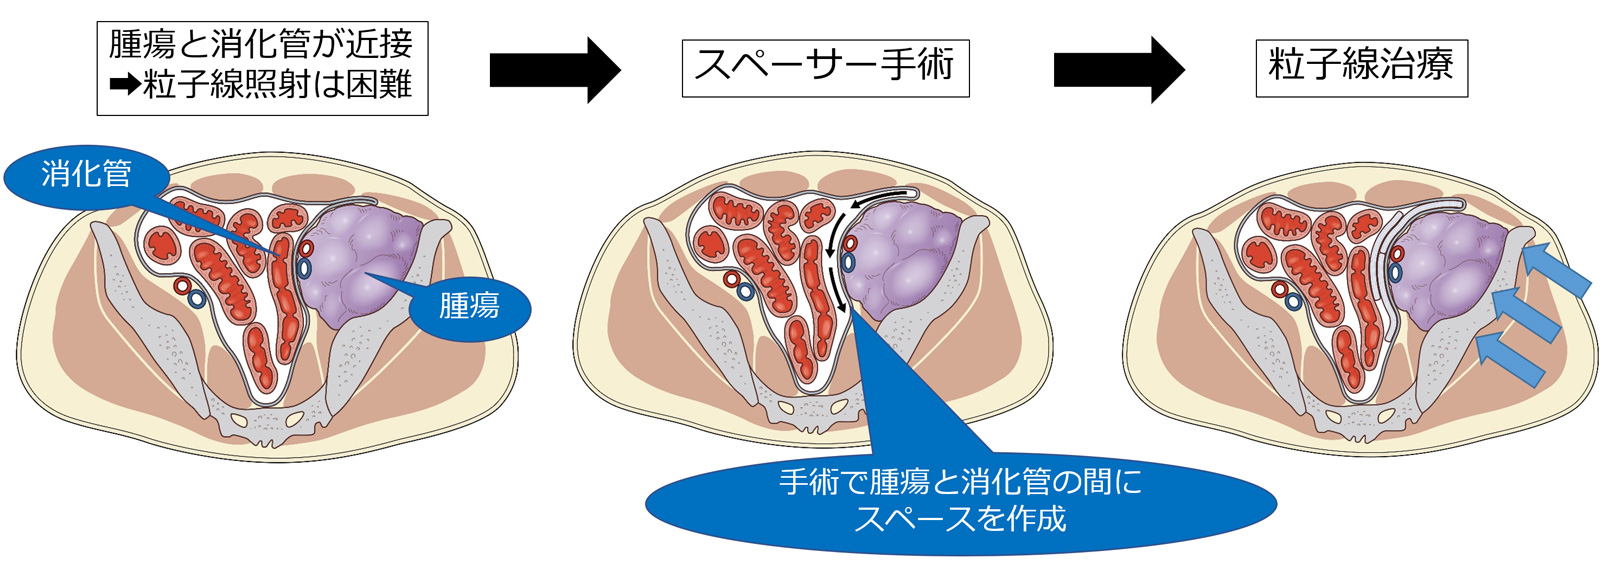 腹部悪性腫瘍に対するスペーサー手術